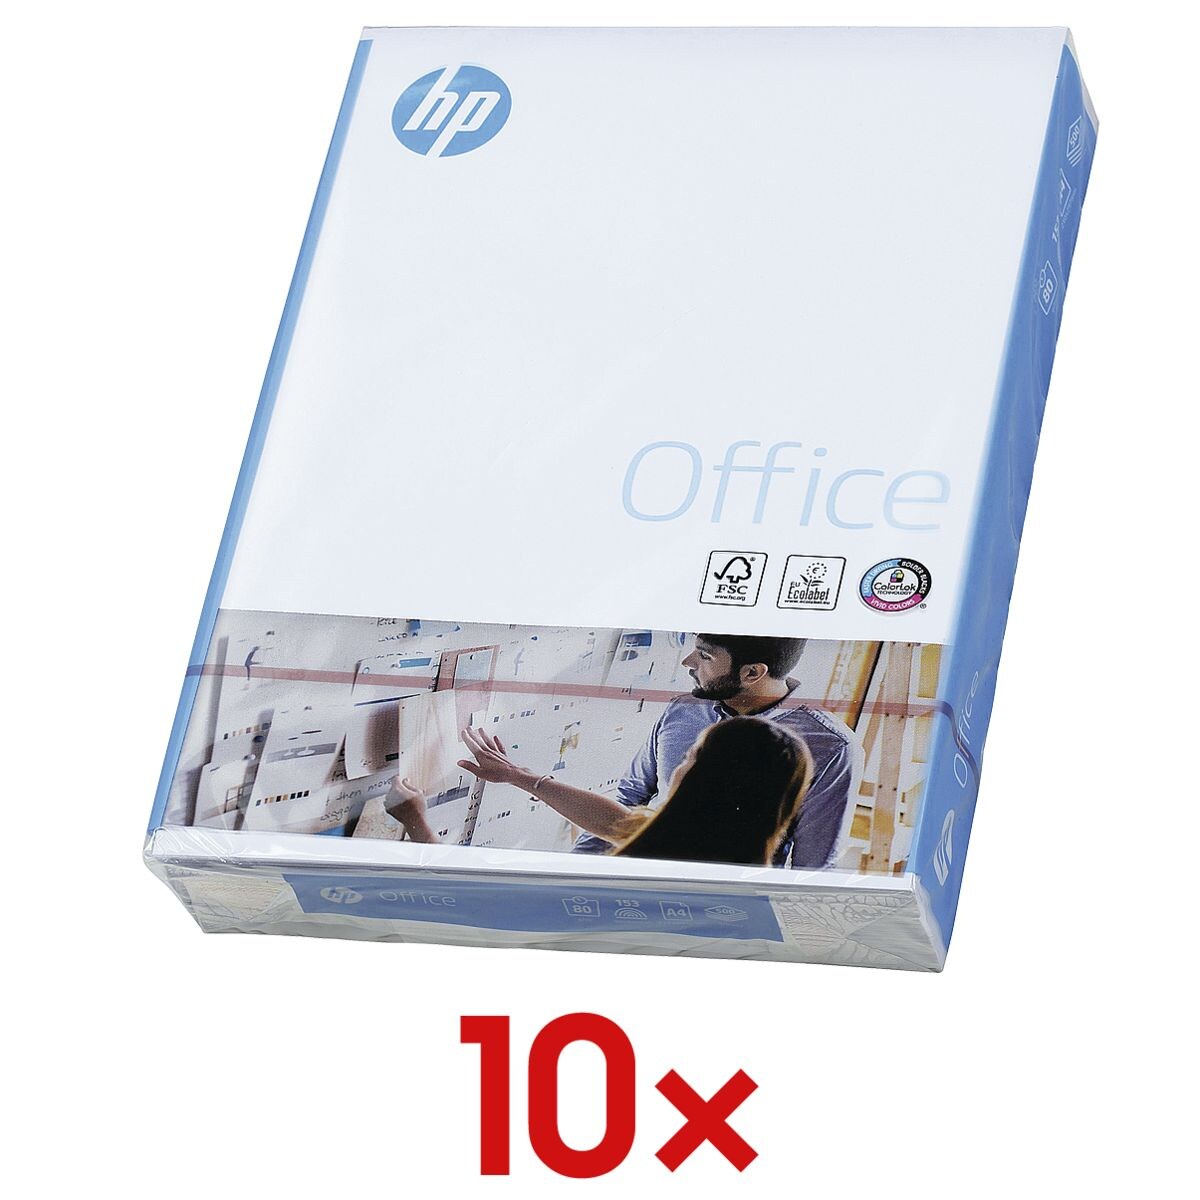 10x Papier multifonction A4 HP Office - 5000 feuilles au total, 80g/m²